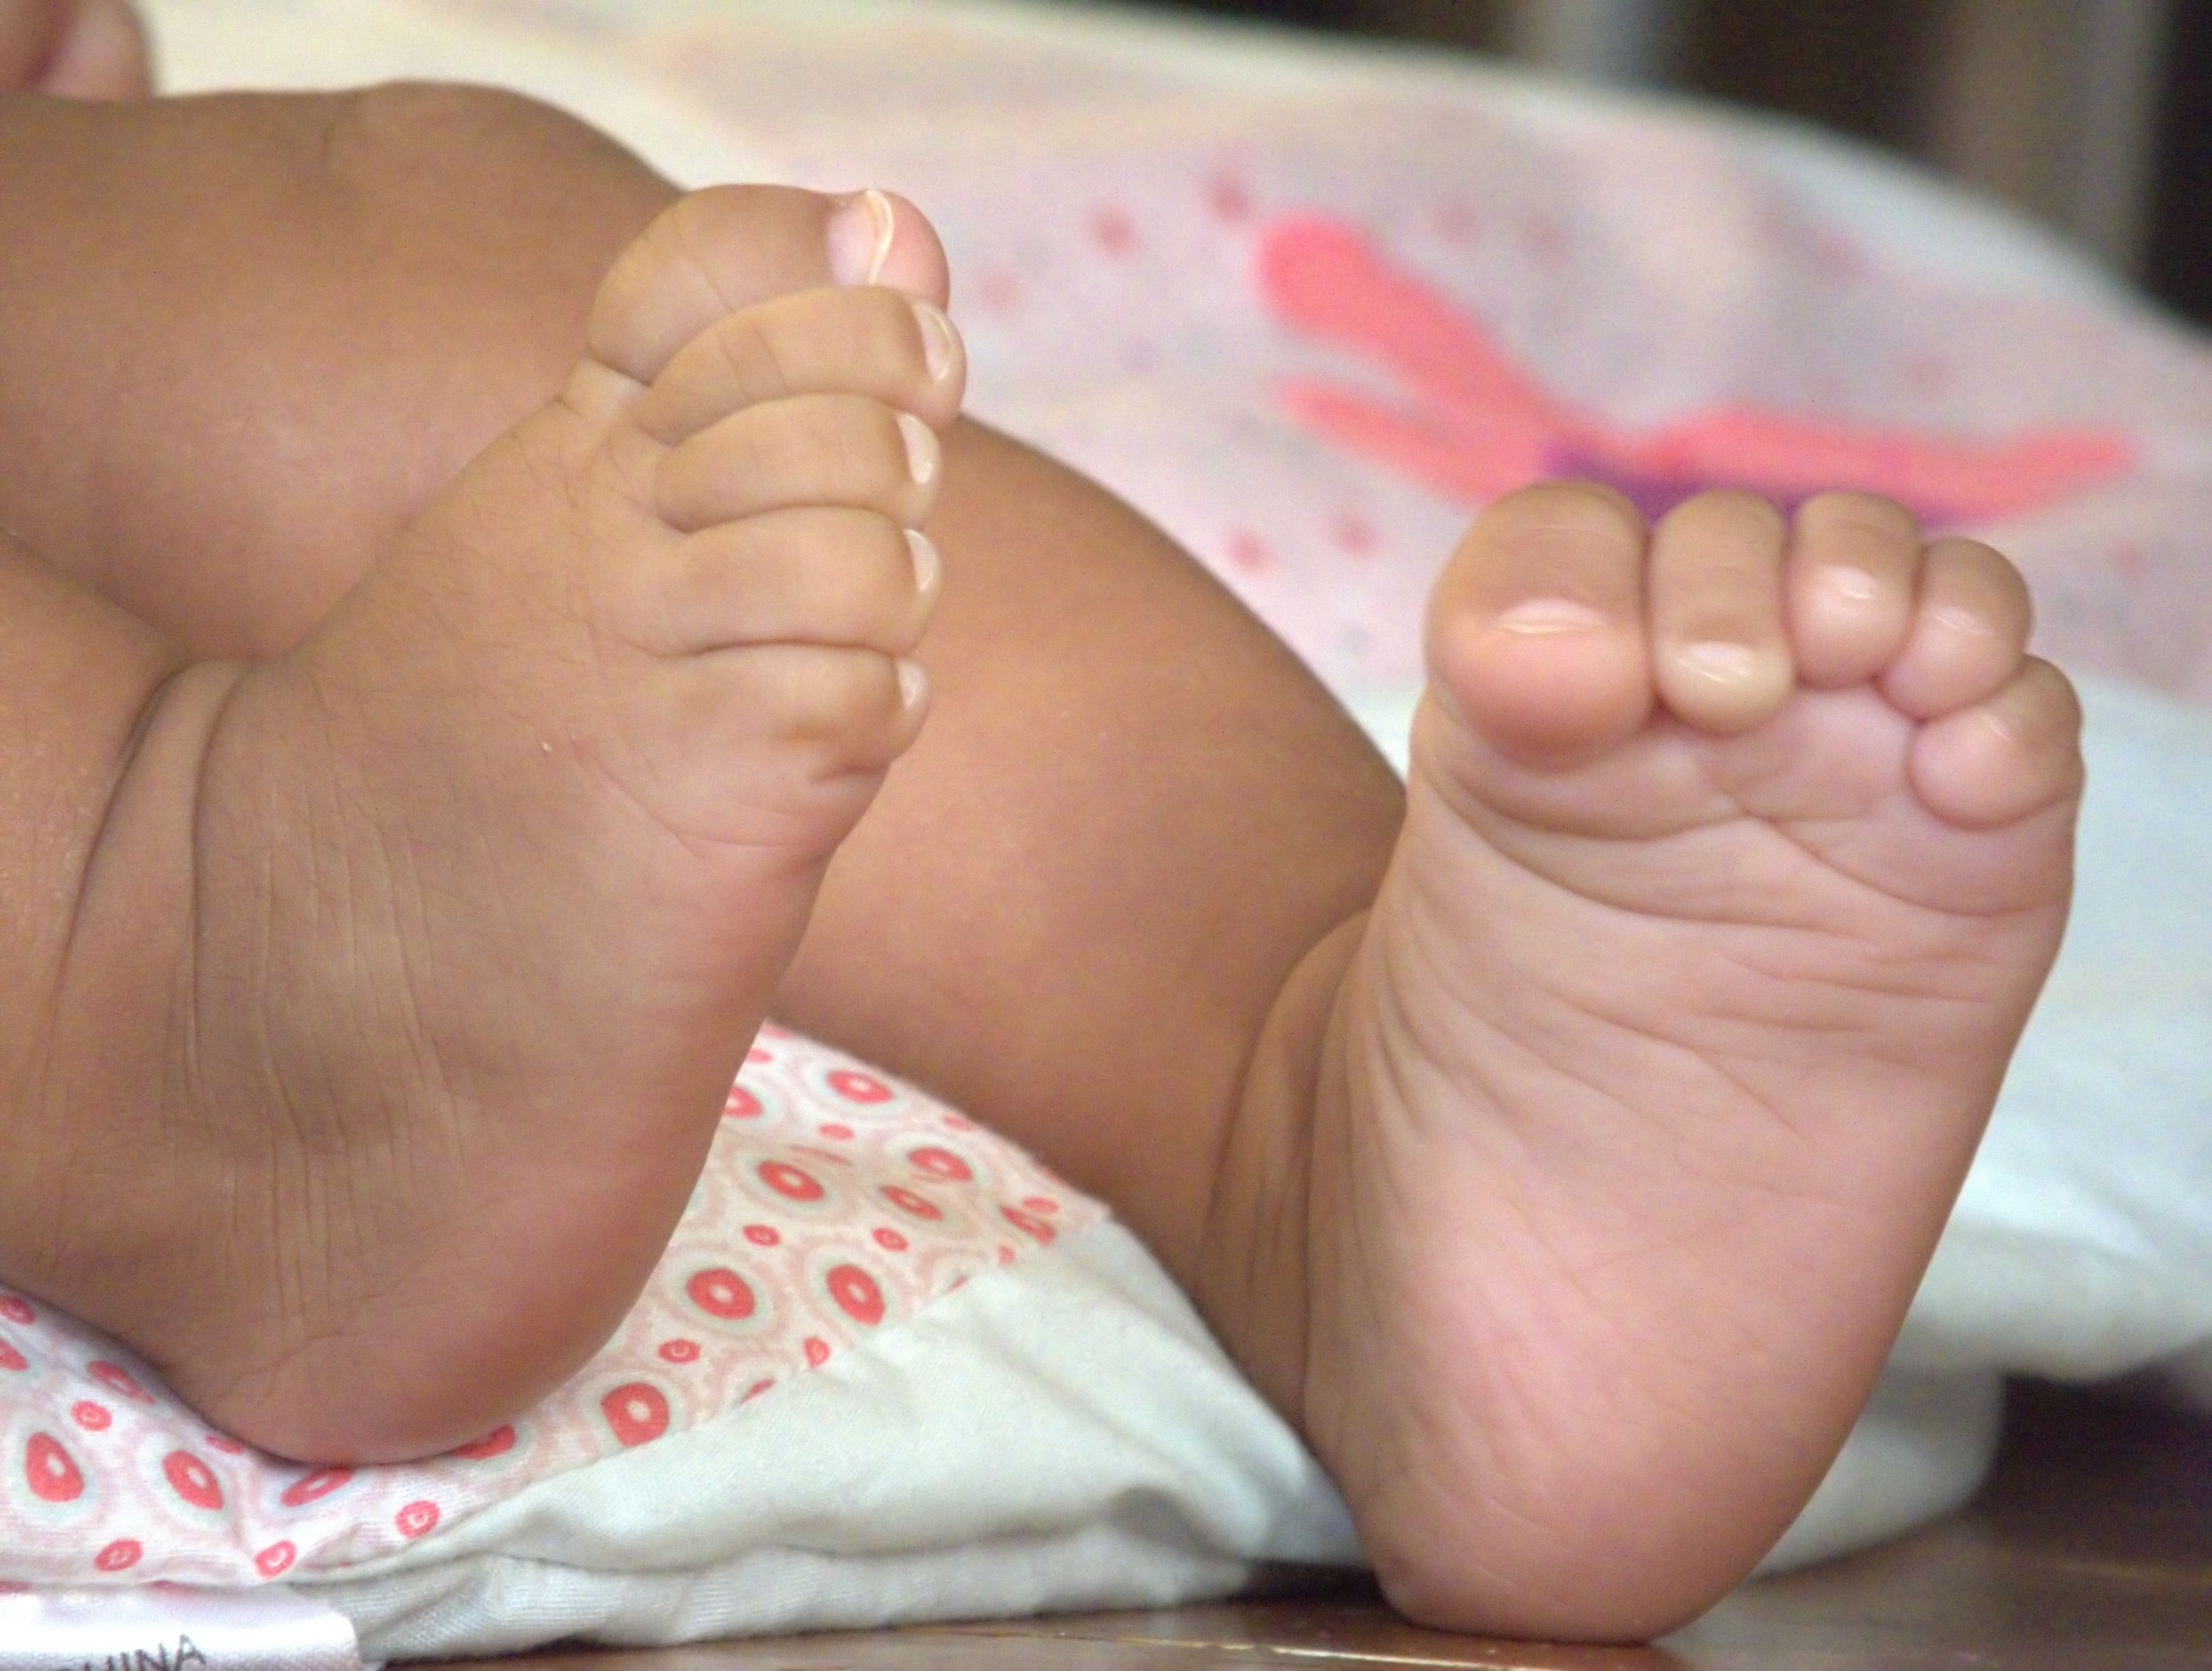     La maternité de la Polyclinique va fermer « le 31 décembre »

